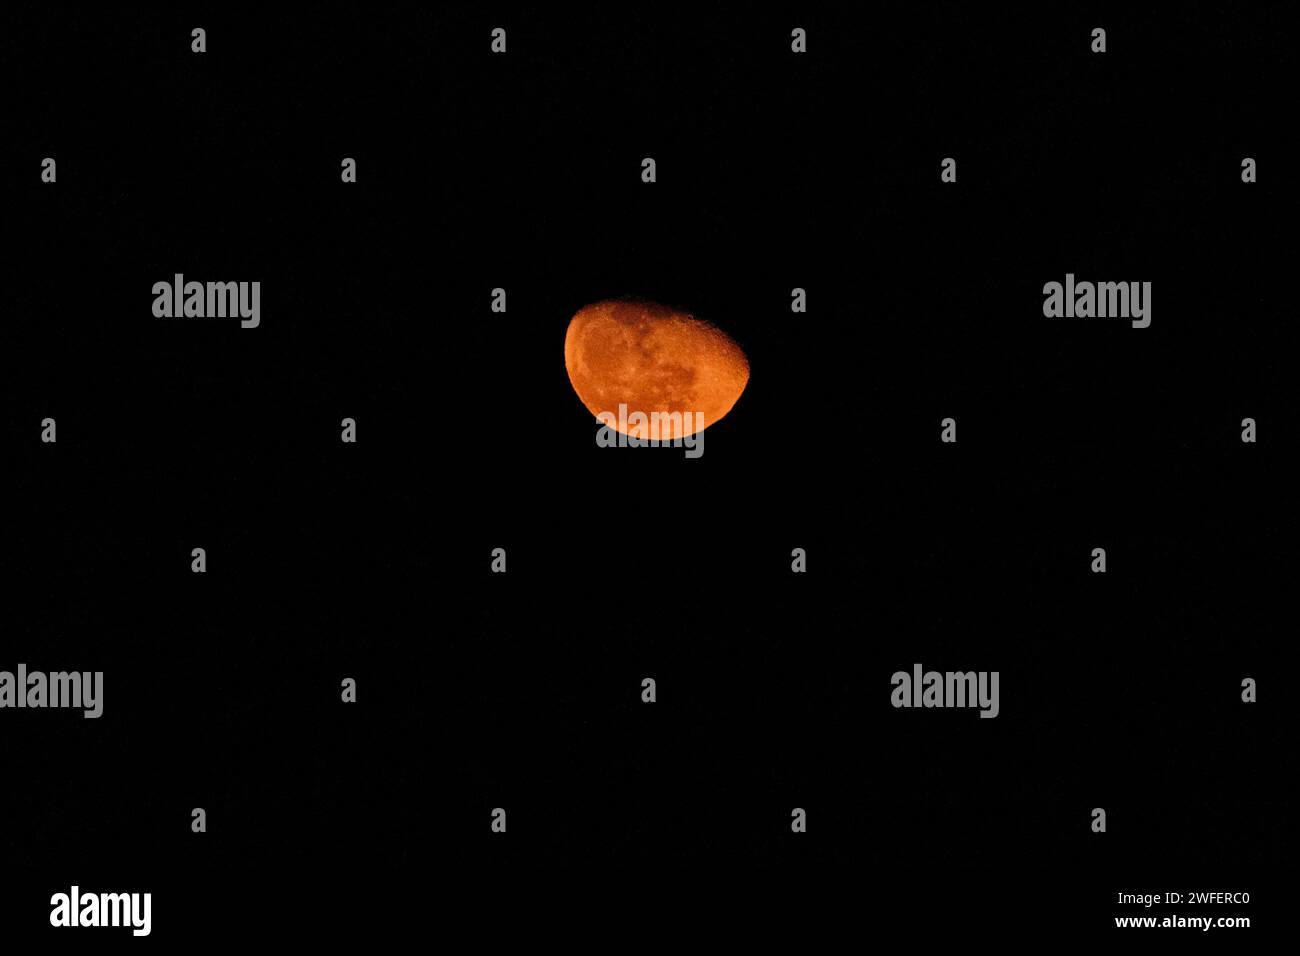 Mond, Gibbous Phase. Heute und heute Abend wird die Mondphase nachlassen. Dies ist die erste Phase nach dem Vollmond und dauert etwa 7 Tage. Der Mond hat eine kupferfarbene Farbe das Phänomen wird durch Rayleigh-Streuung des Sonnenlichts durch die Erdatmosphäre verursacht und seine Wahrnehmung wird durch die atmosphärische Brechung verstärkt. Sie tritt beim auf- oder Untergang des Mondes und während seiner Sonnenfinsternisse auf. ABPH6953 Copyright: XAntonioxBalascox Stockfoto